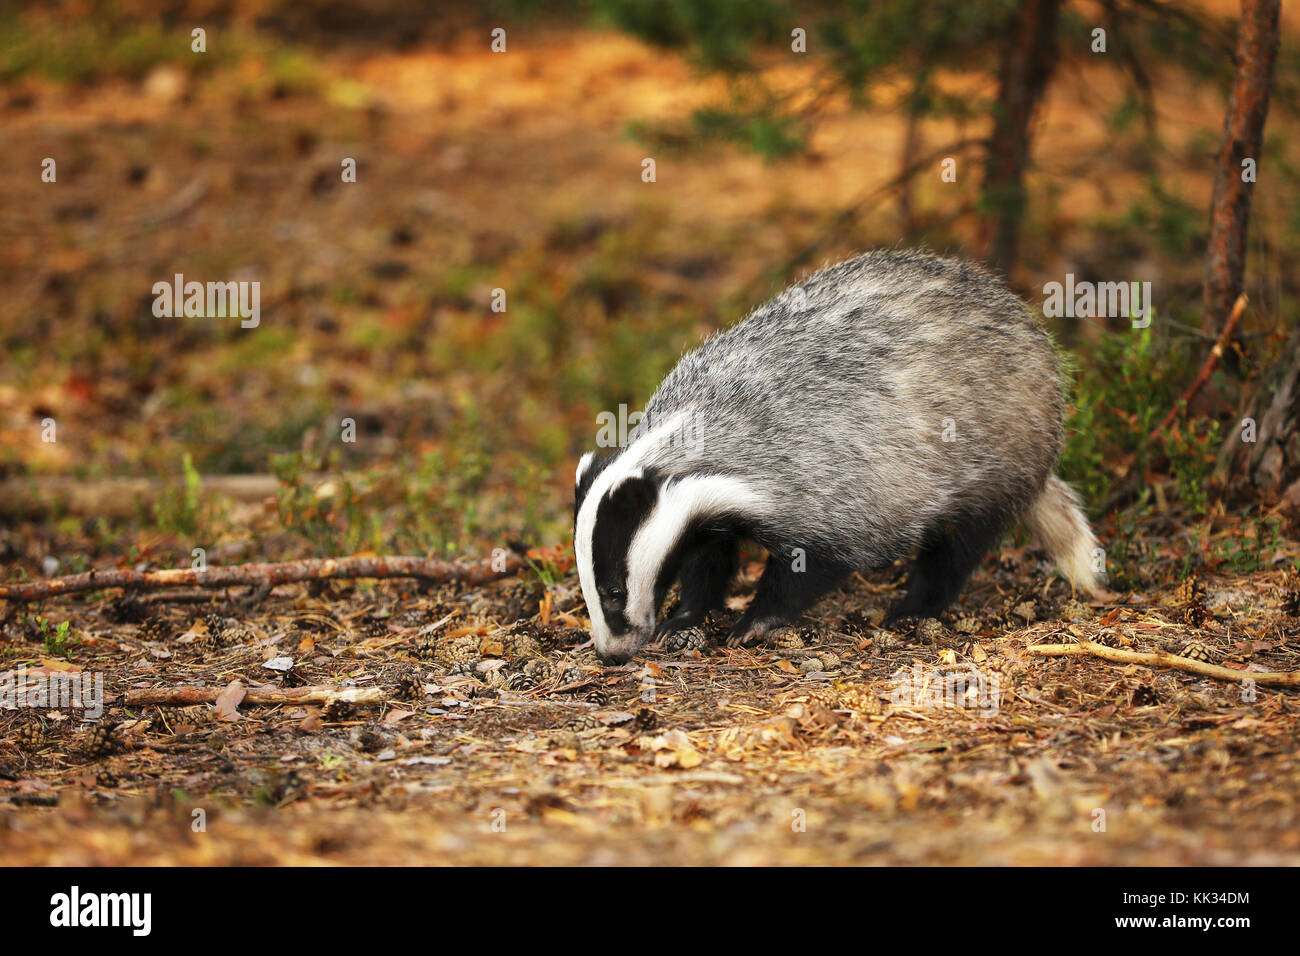 Eurasian Badger - Meles meles - in autumn forest Stock Photo